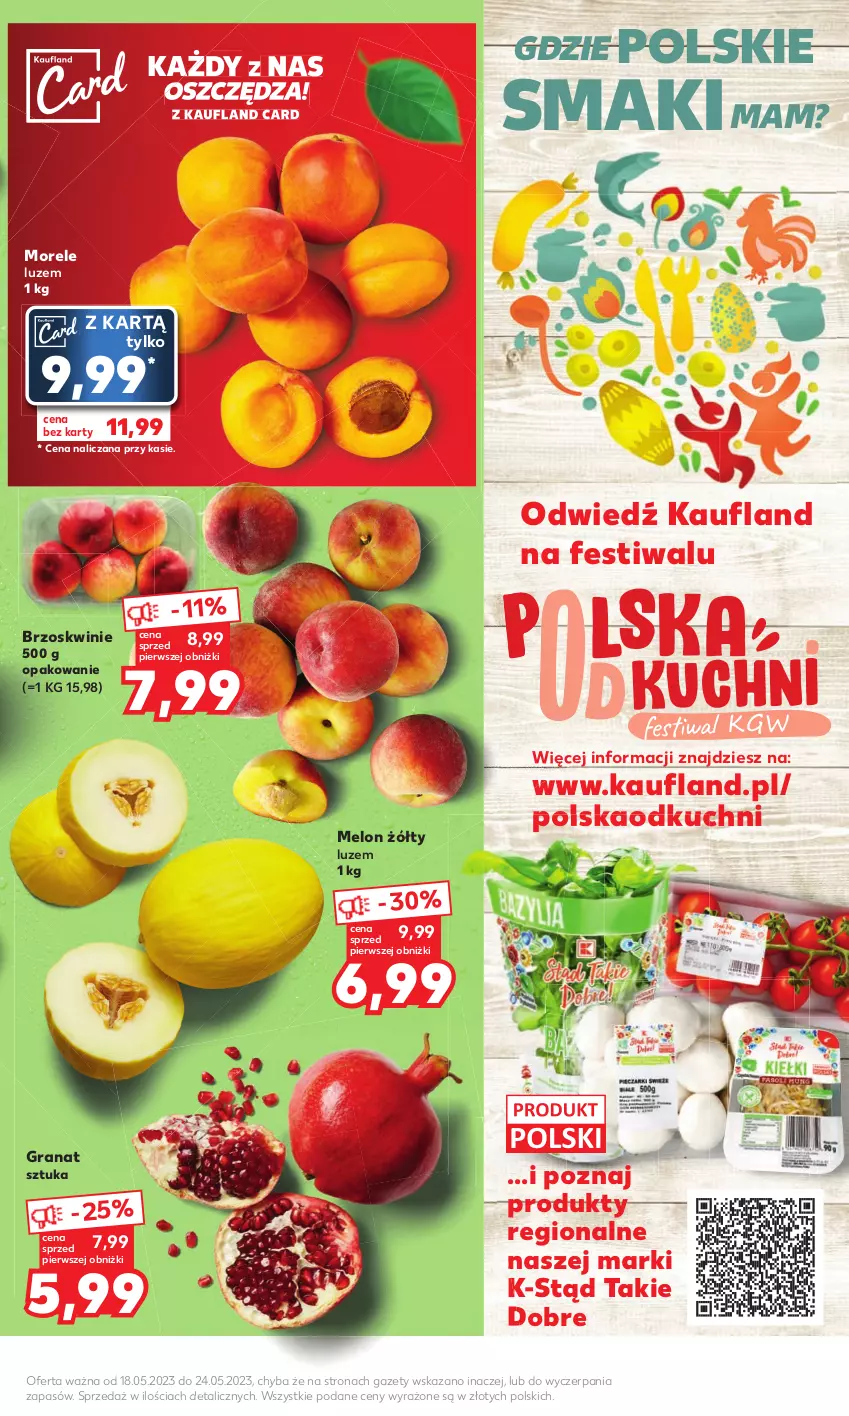 Gazetka promocyjna Kaufland - Mocny Start - ważna 22.05 do 24.05.2023 - strona 7 - produkty: Brzoskwinie, Gra, Granat, Melon